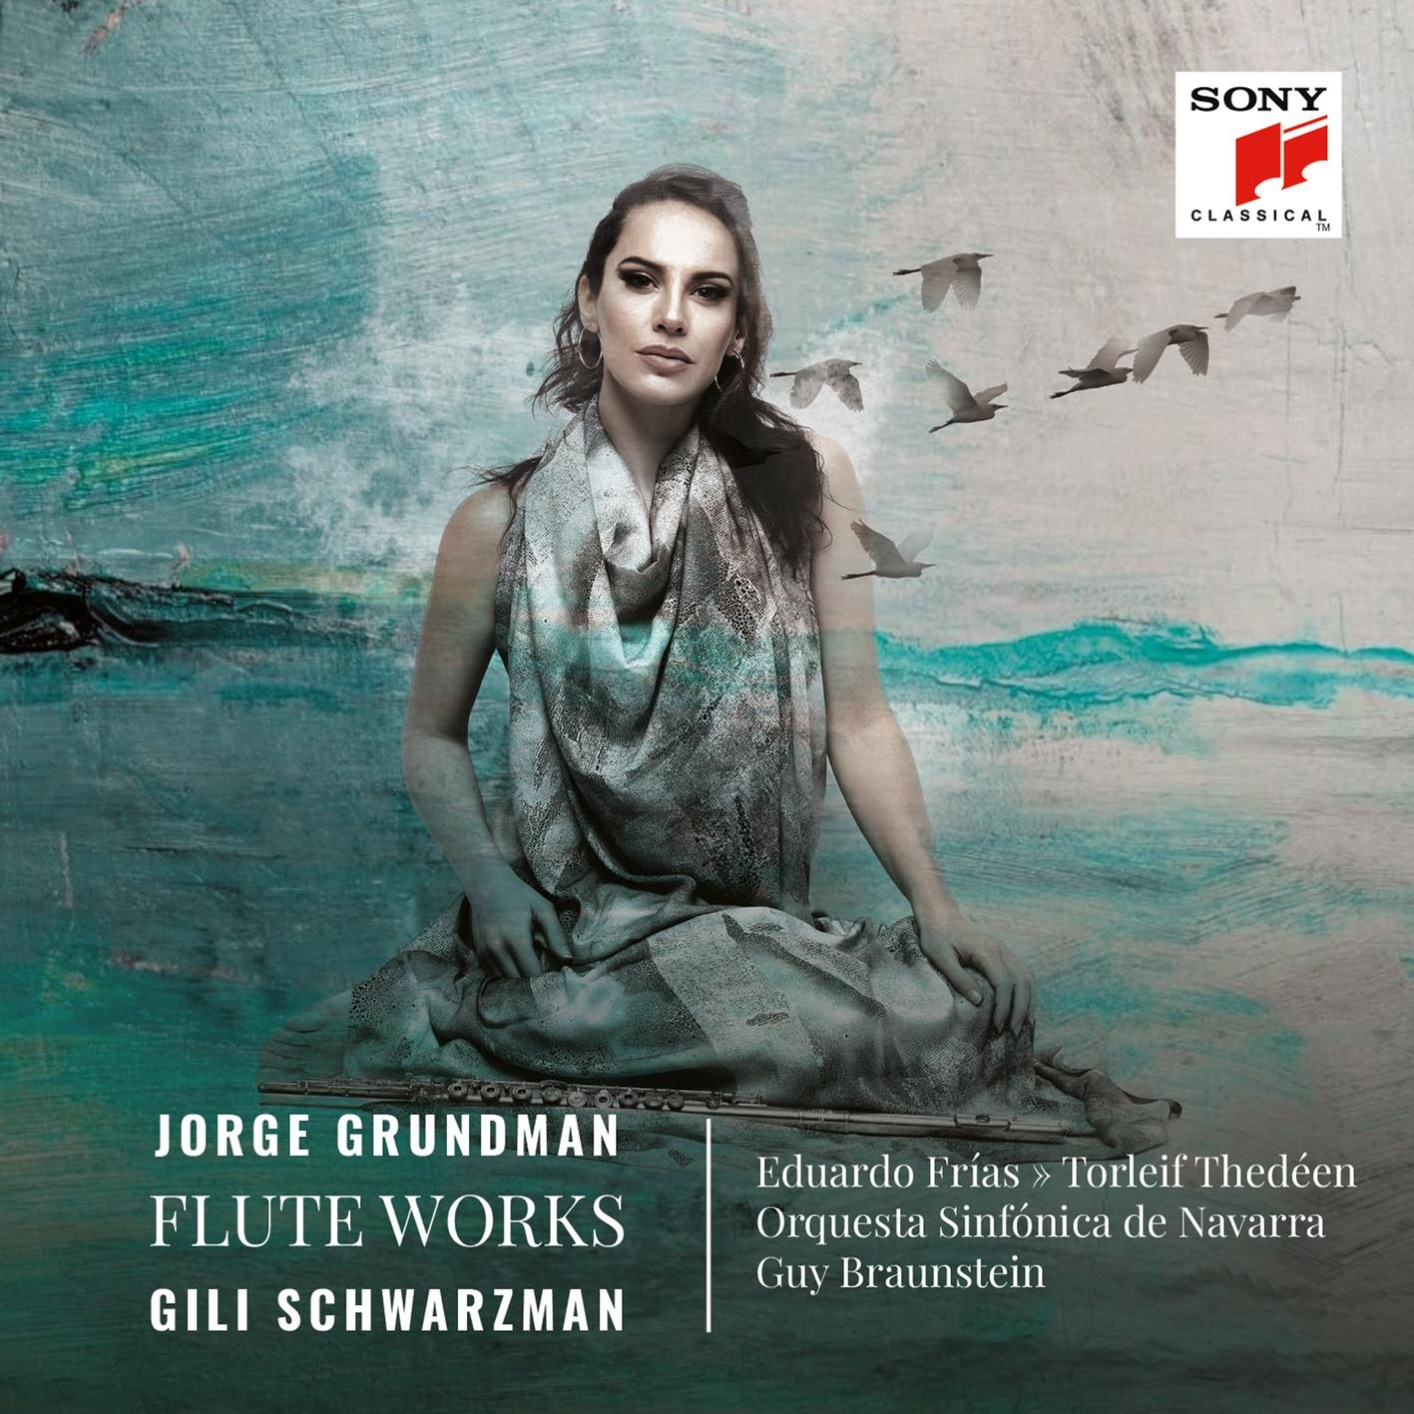 Gili Schwarzman, Orquesta Sinfonica de Navarra, Guy Braunstein - Jorge Grundman, Flute Works (2021) [FLAC 24bit/48kHz]